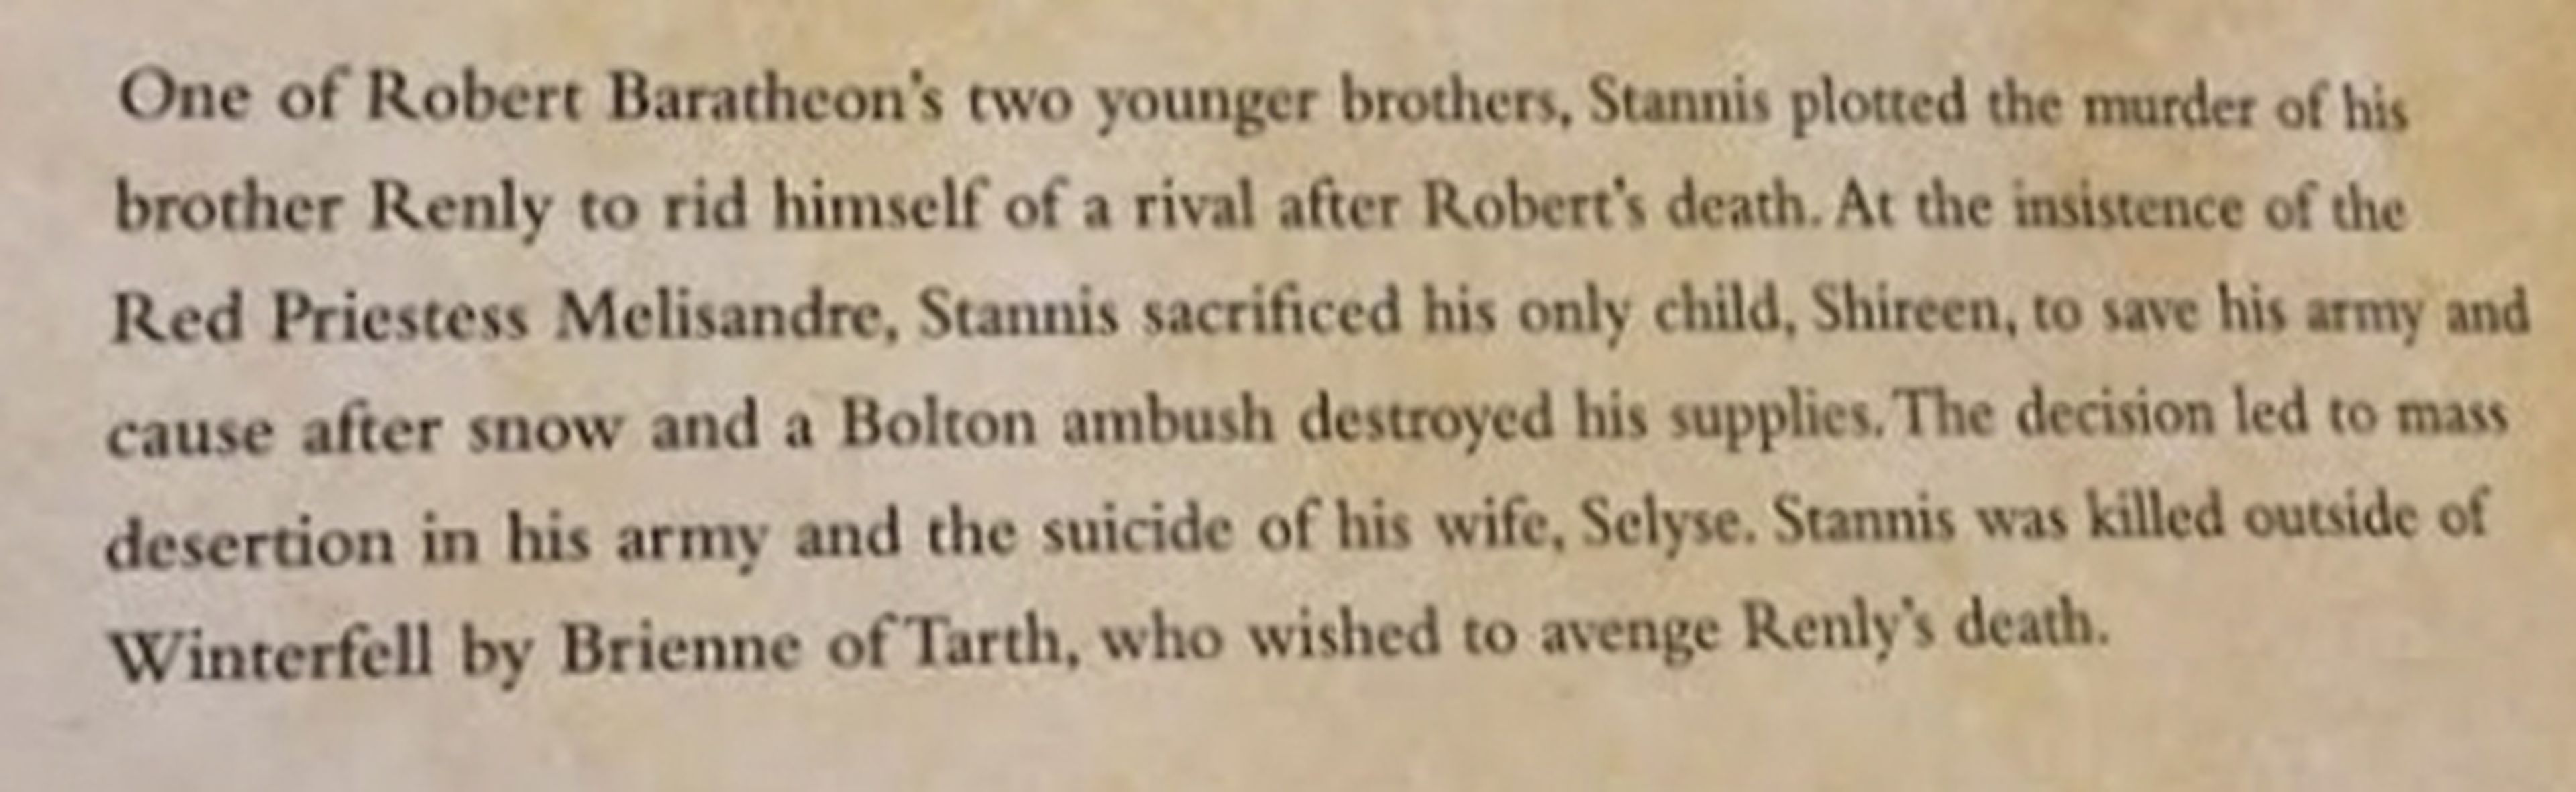 Juego de tronos: un libro oficial confirma la muerte de un personaje en la serie